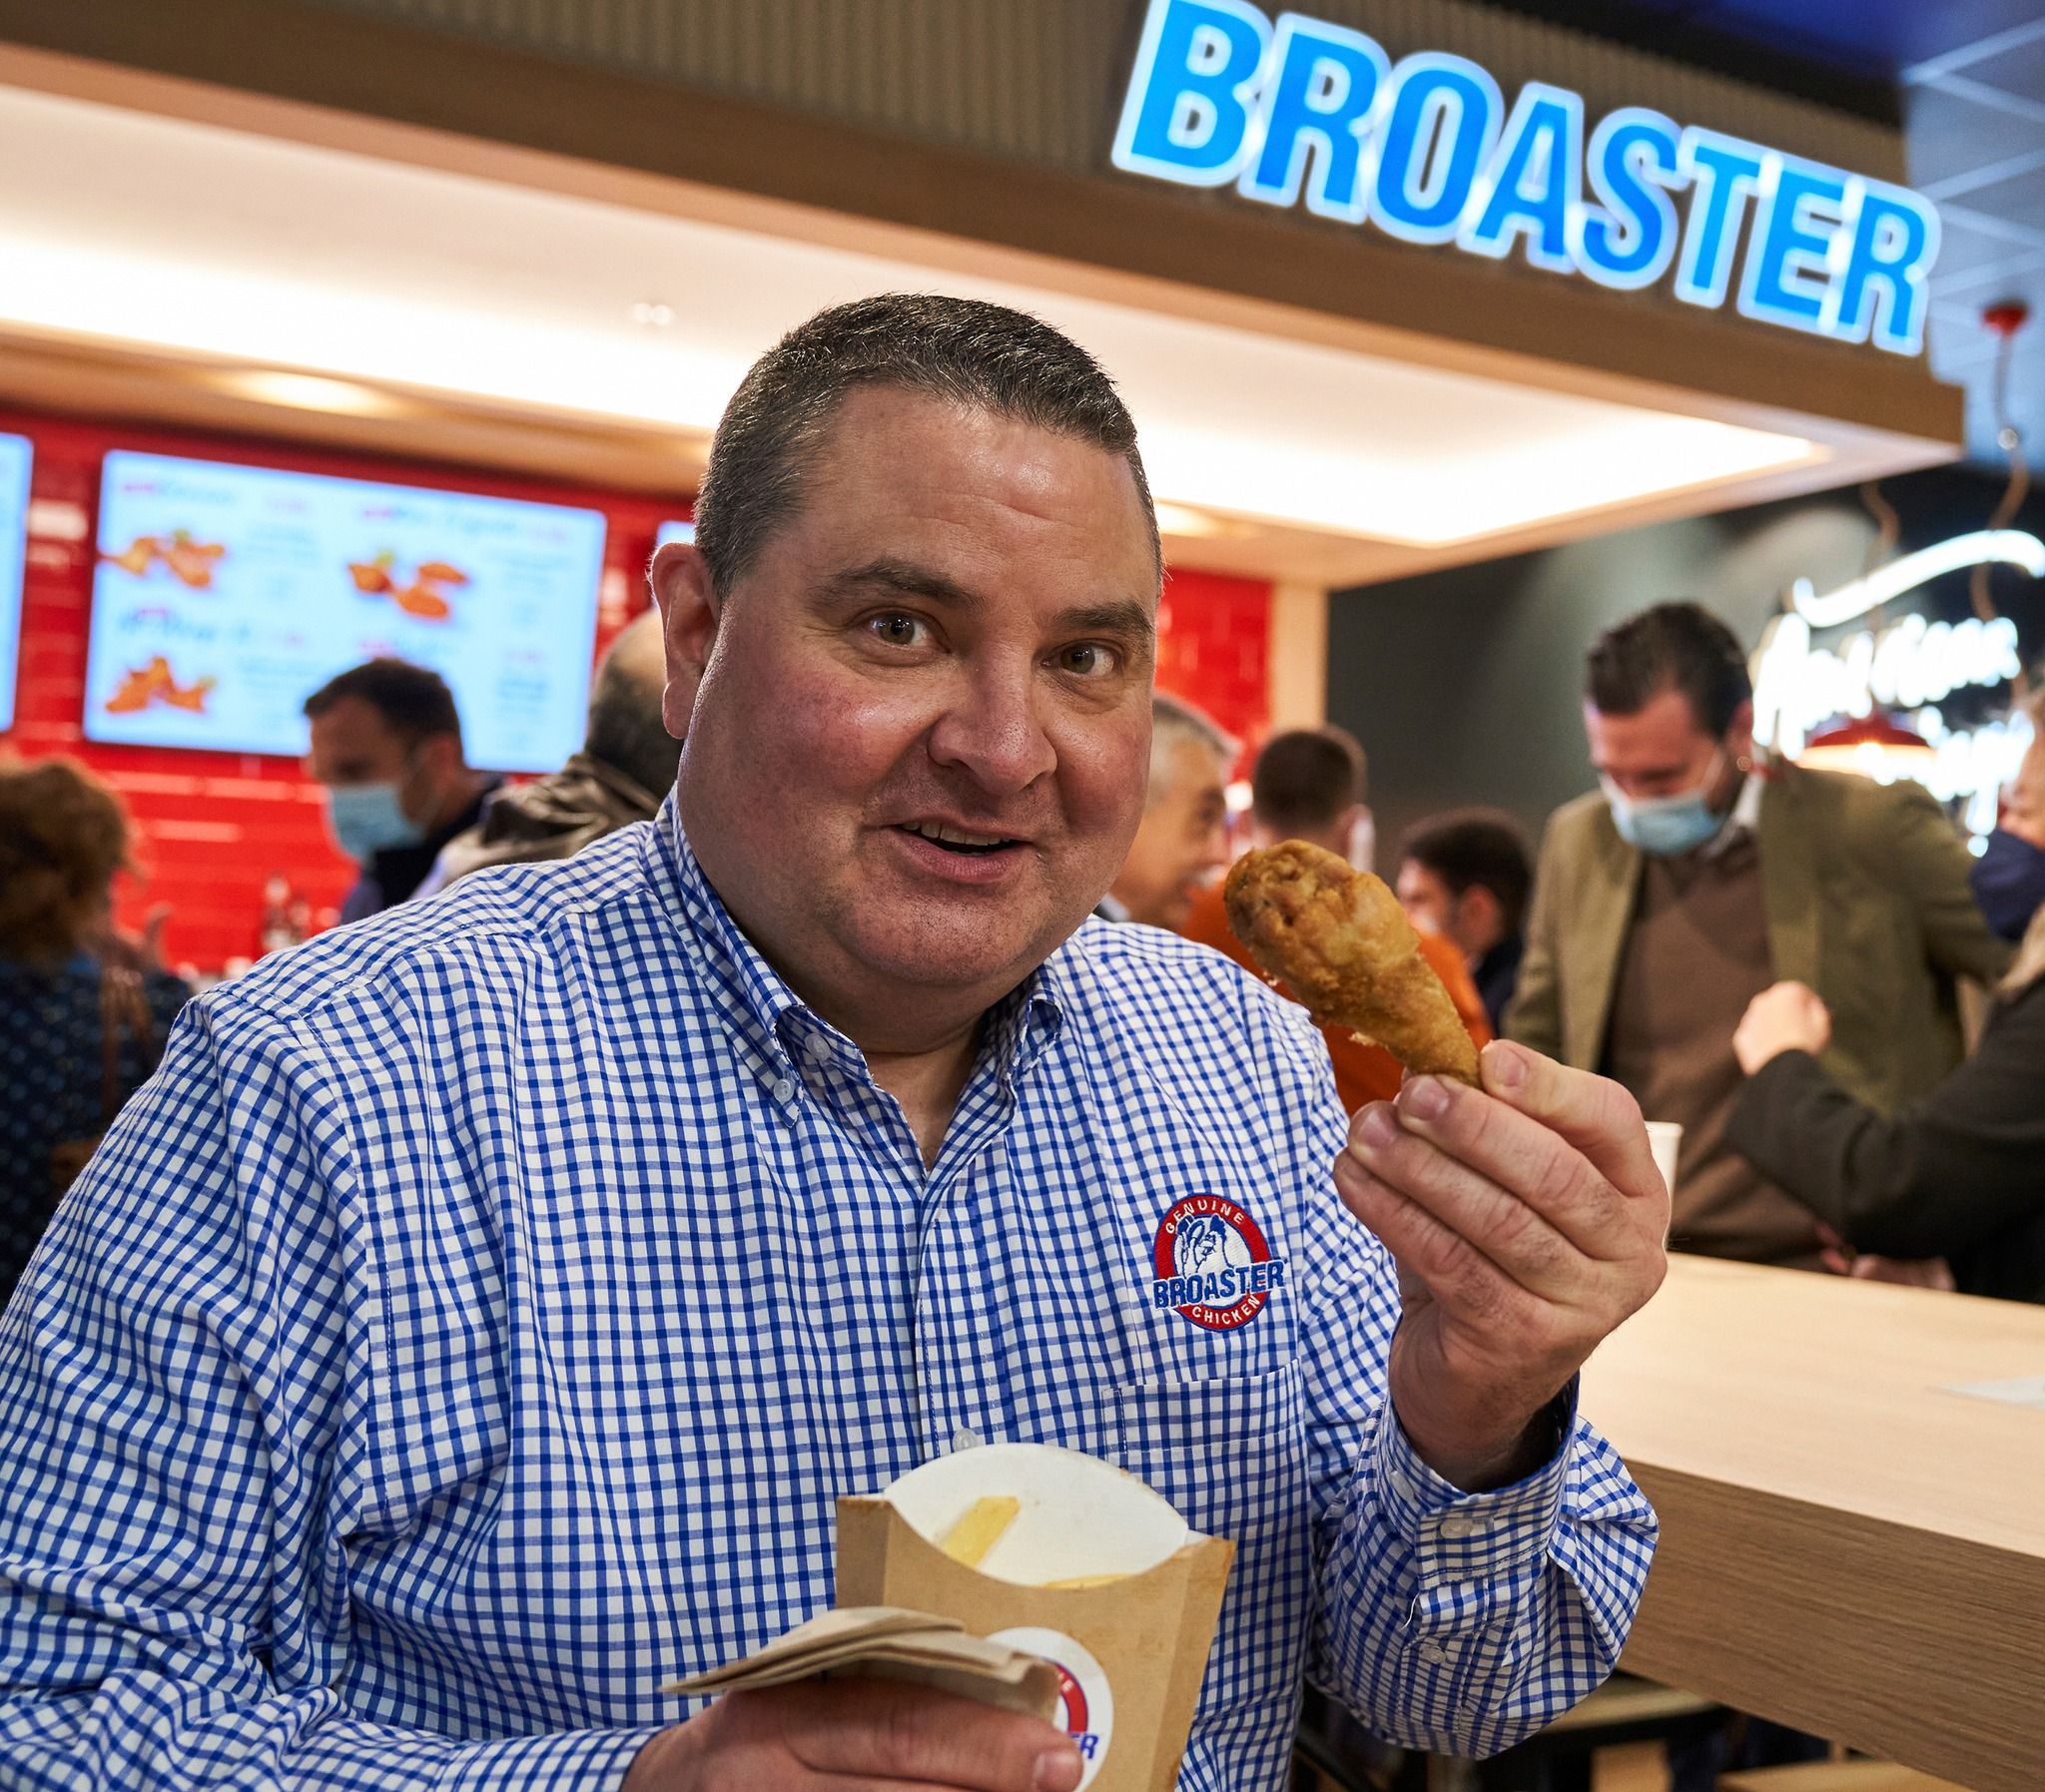 Abre en Jerez el primer restaurante de pollo Broaster americano de España.